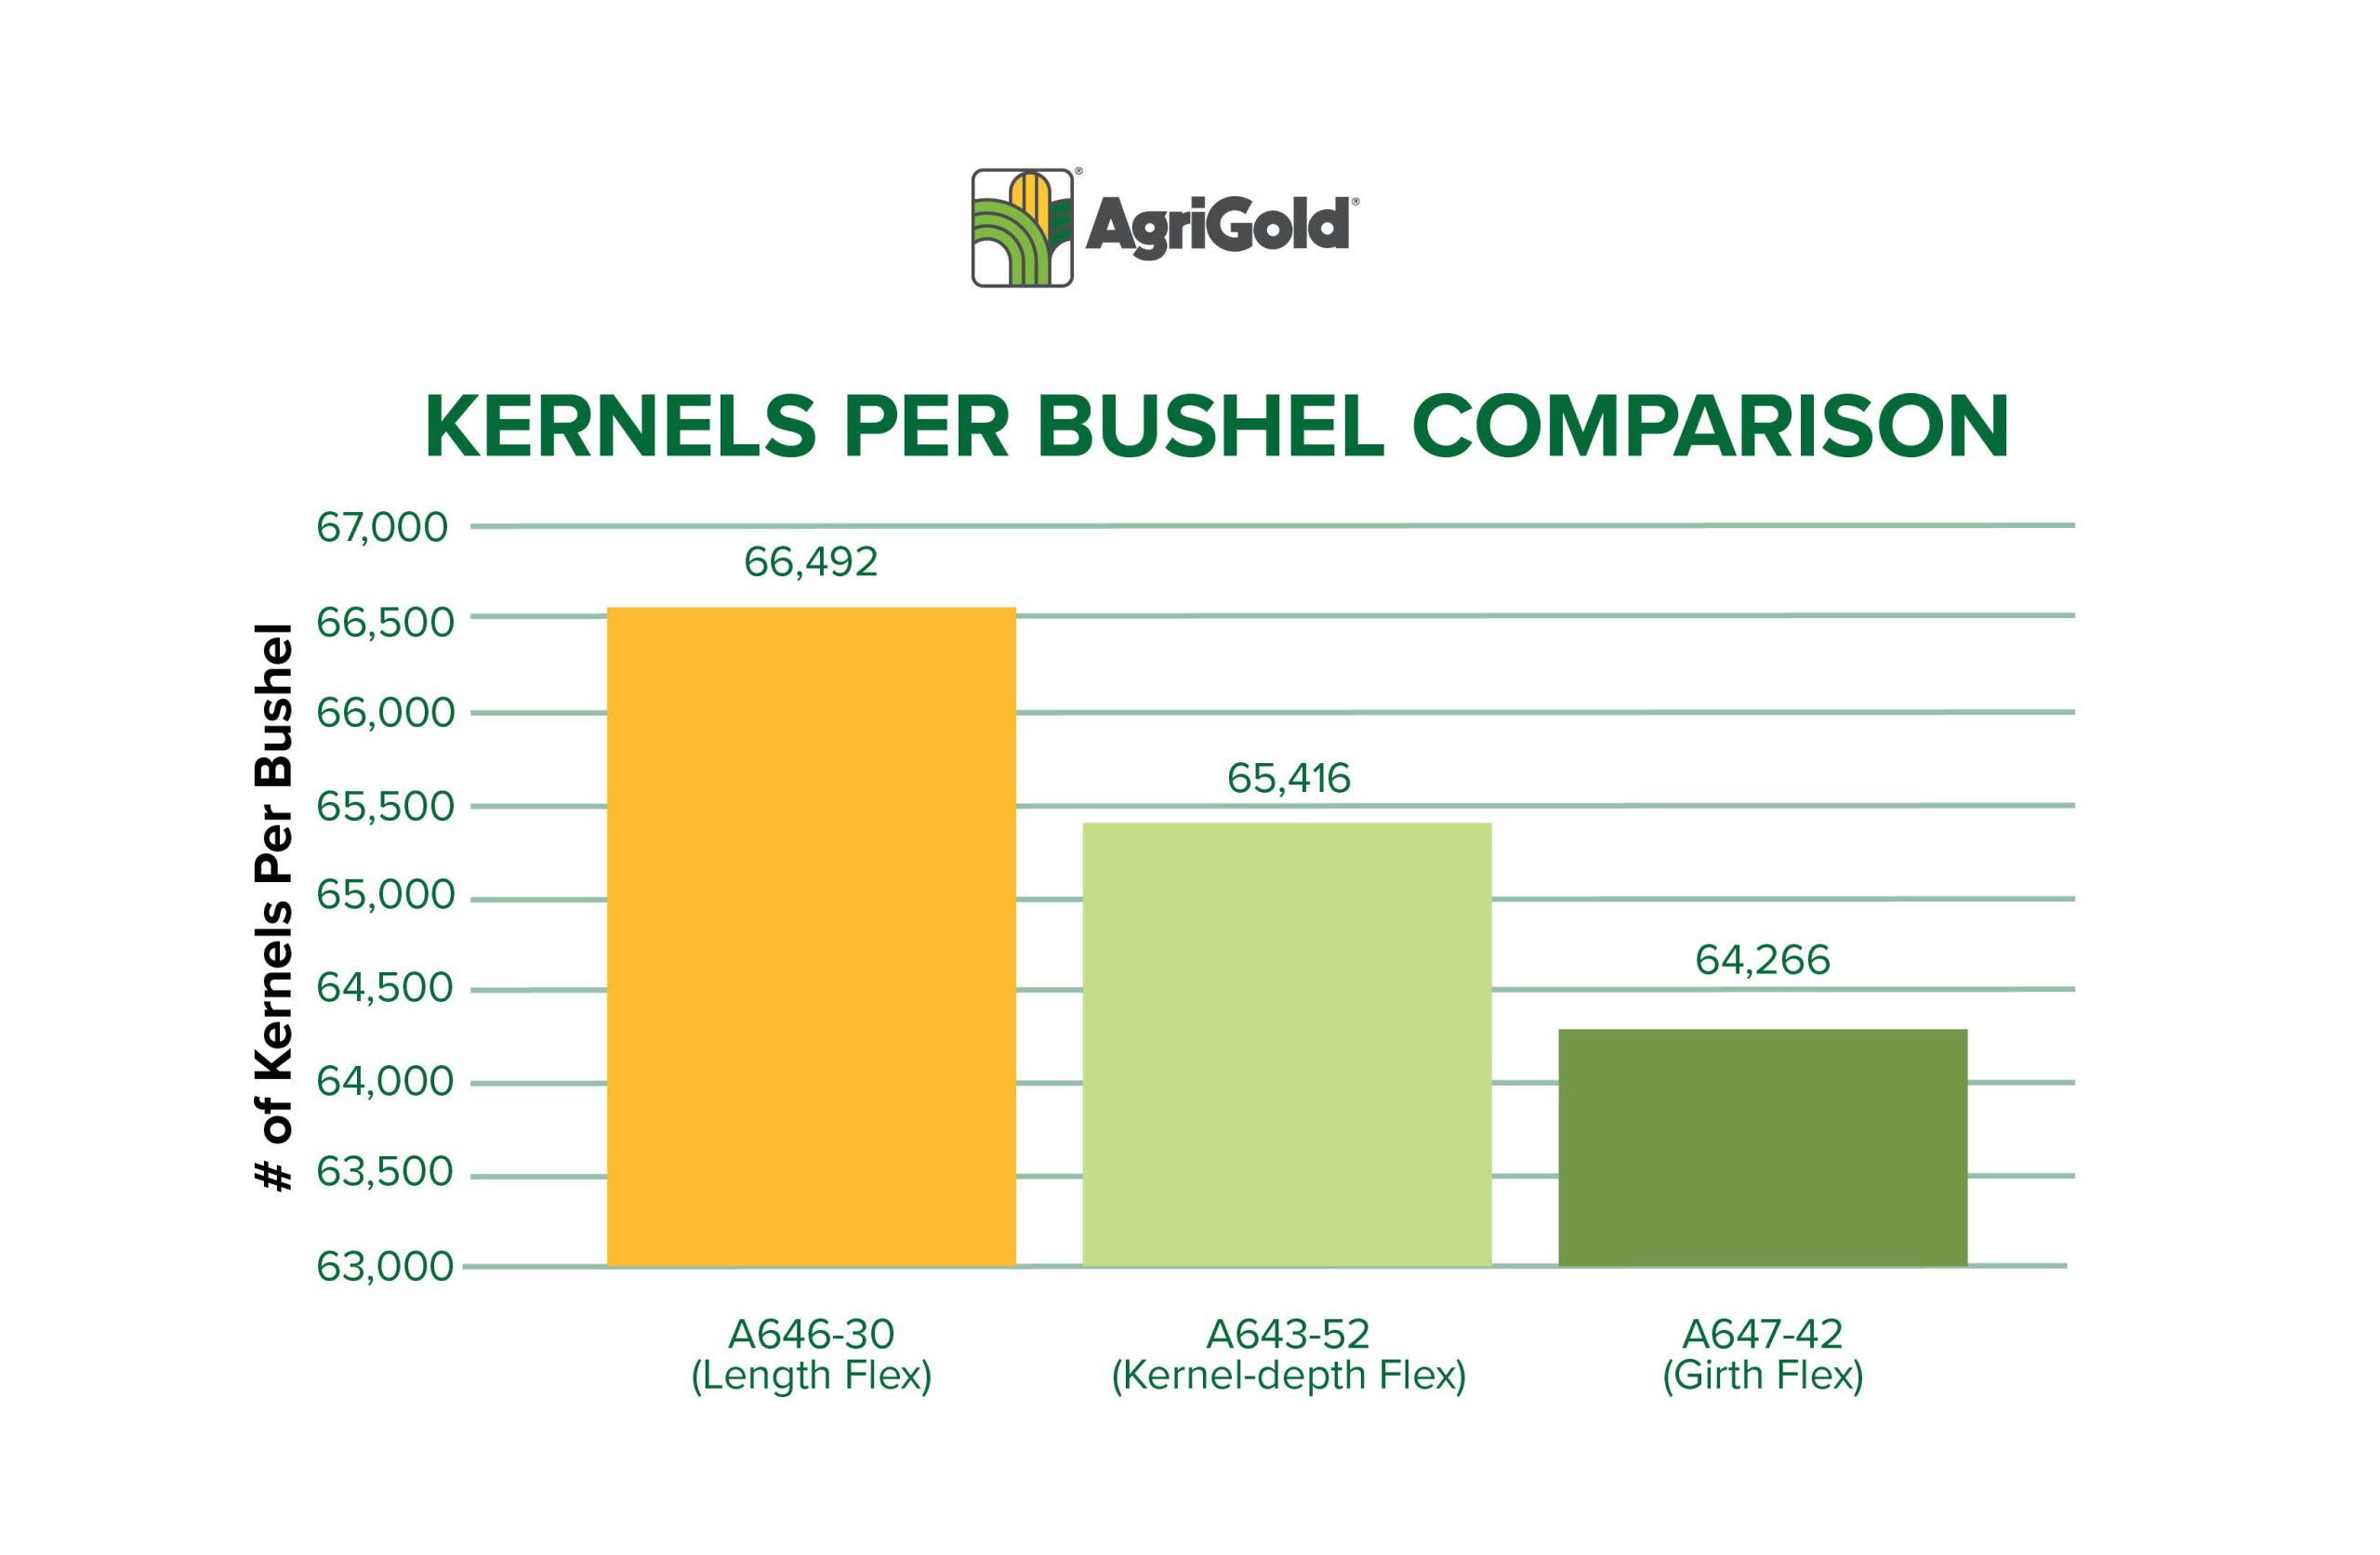 A graph display kernels per bushel comparison between different flex types